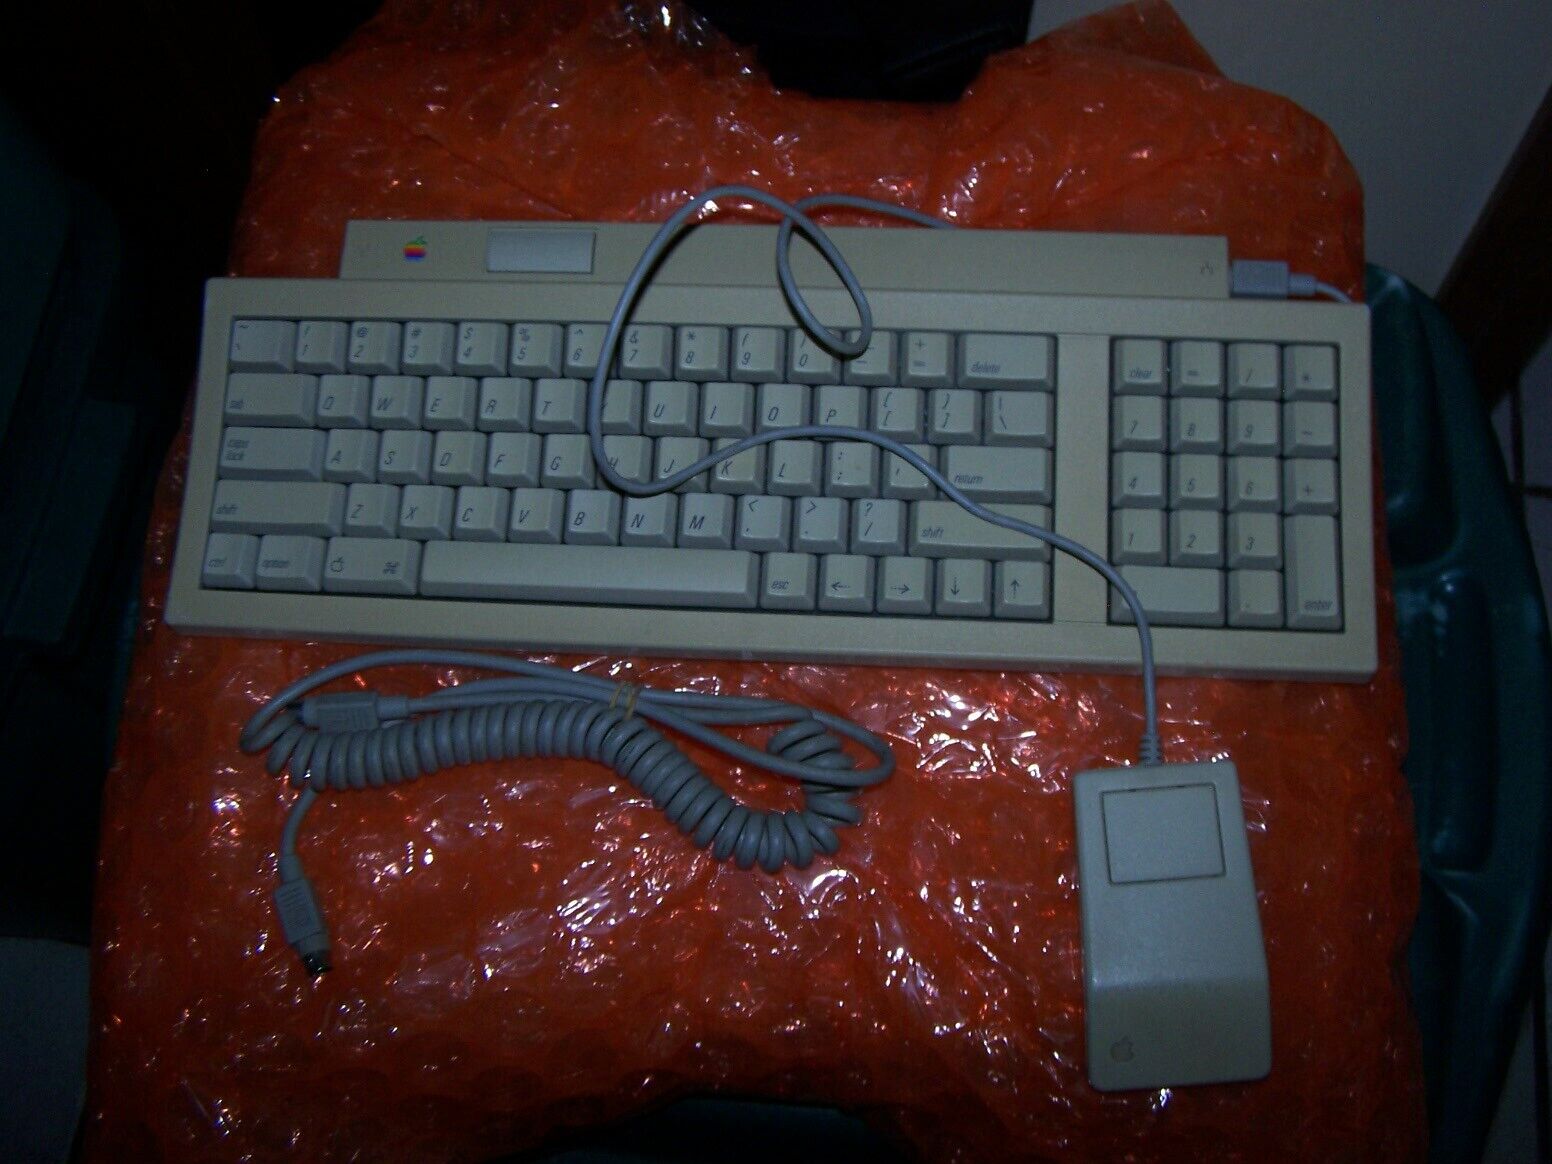 Apple Keyboard II M0487 & Apple Desktop Bus Mouse G5431 Combo